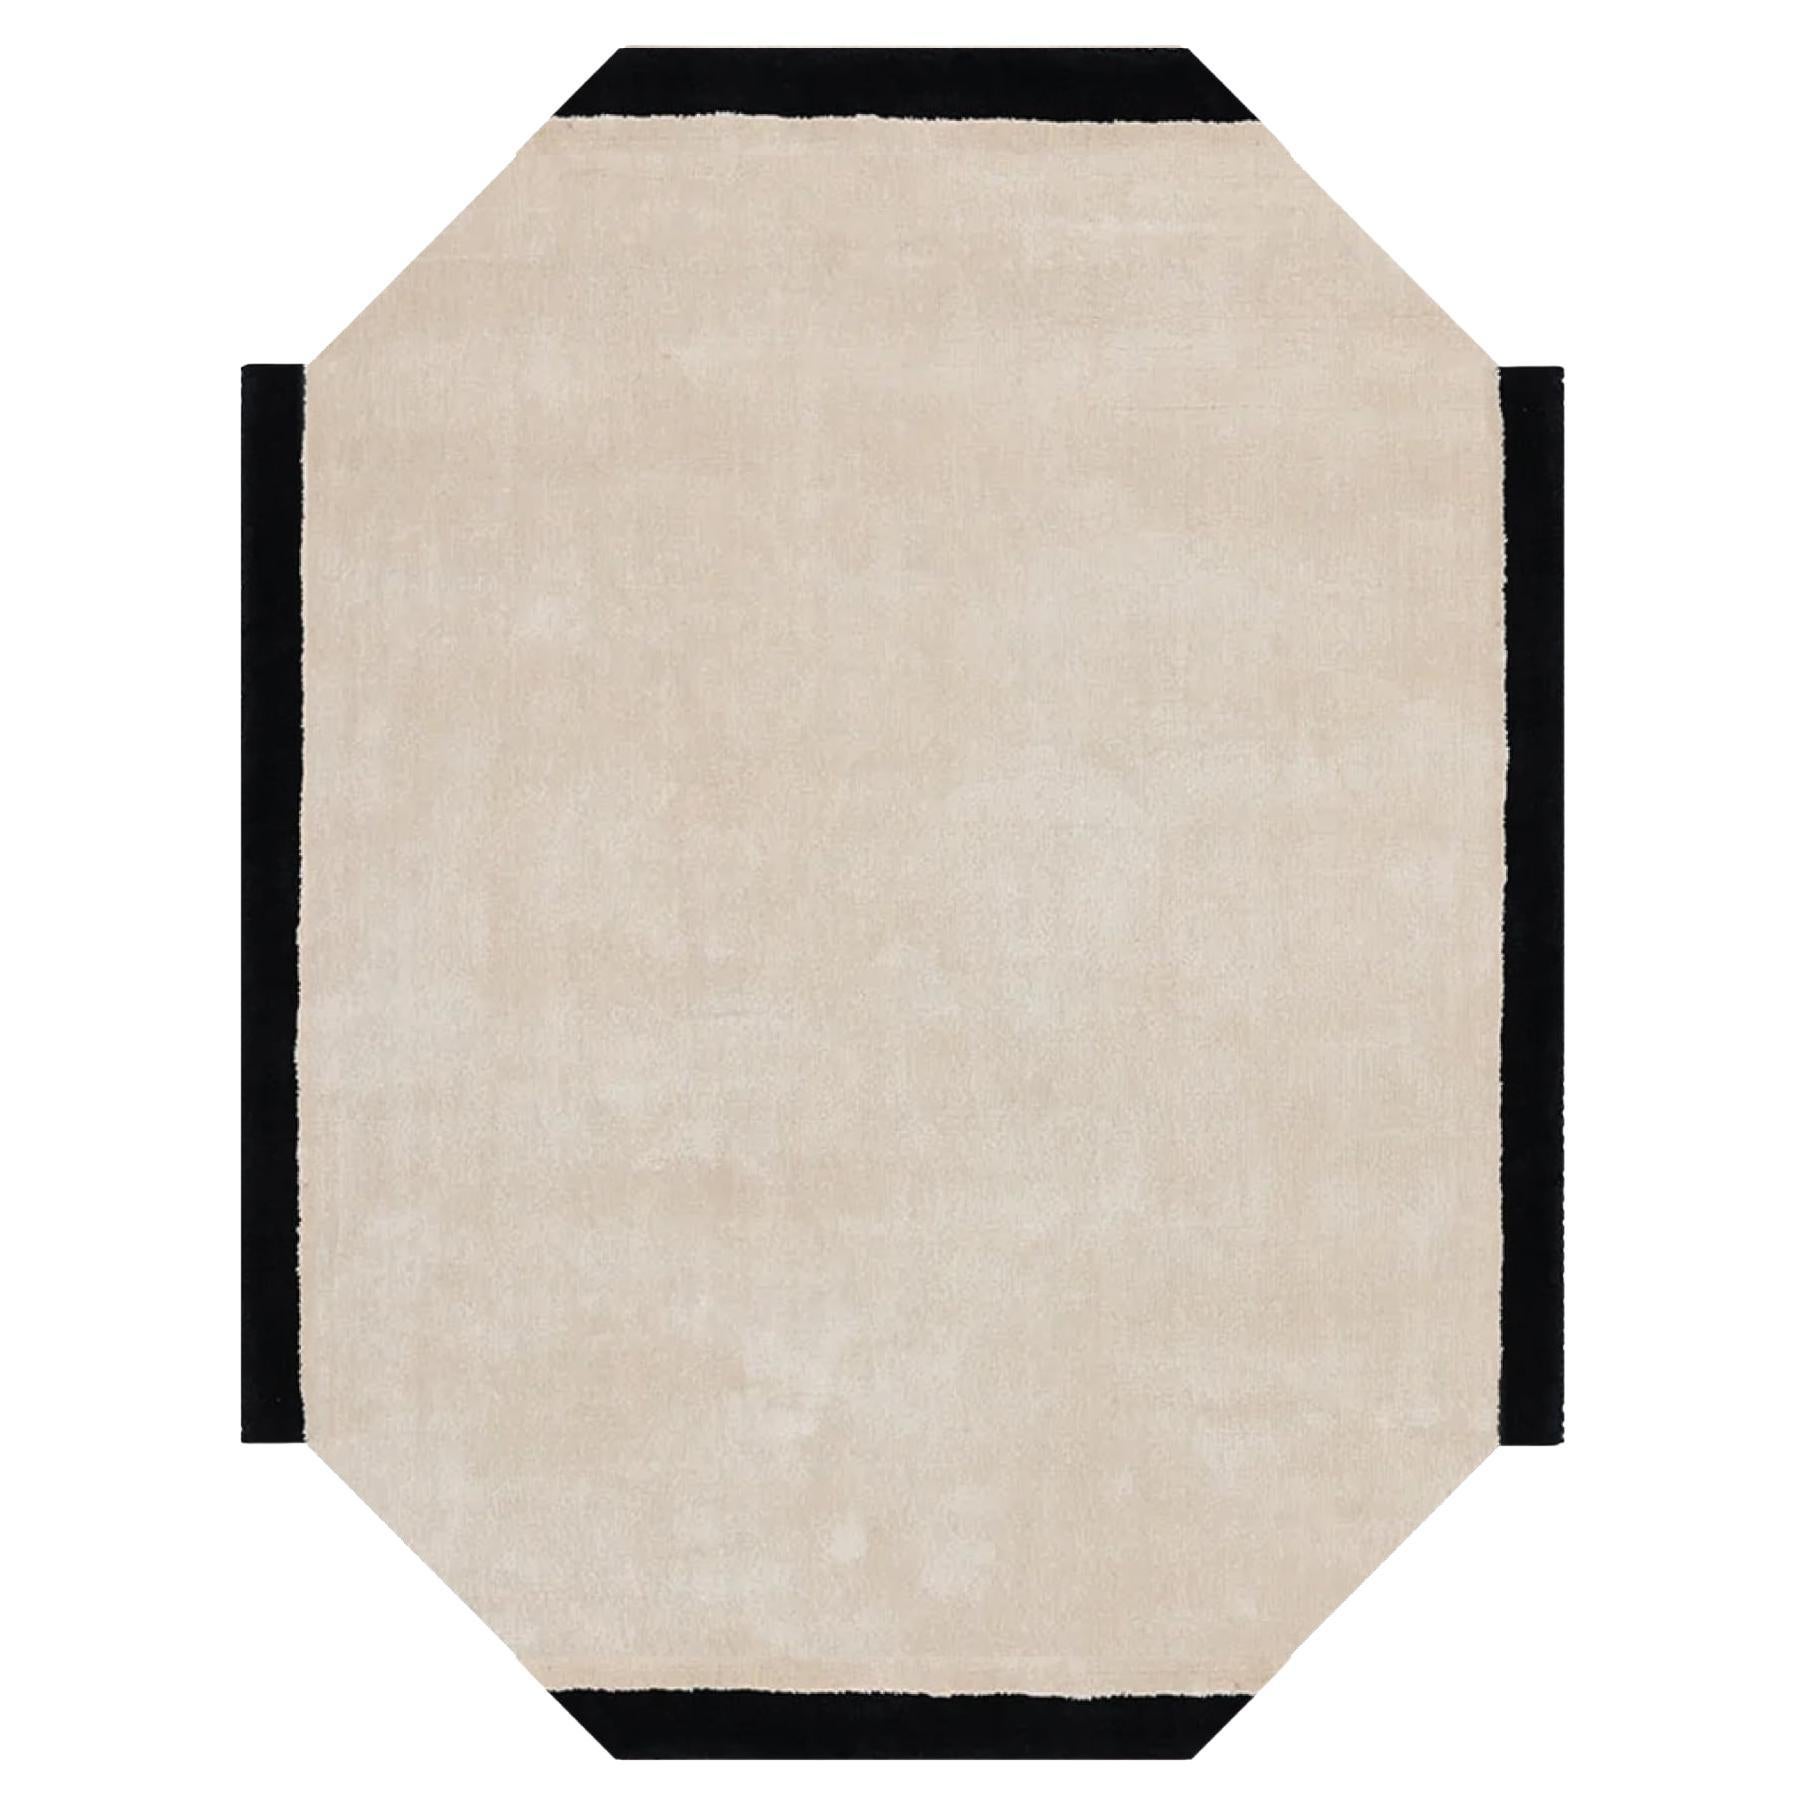 Modern Rectangular Shape Hand-Tufted Rug White Black Frame